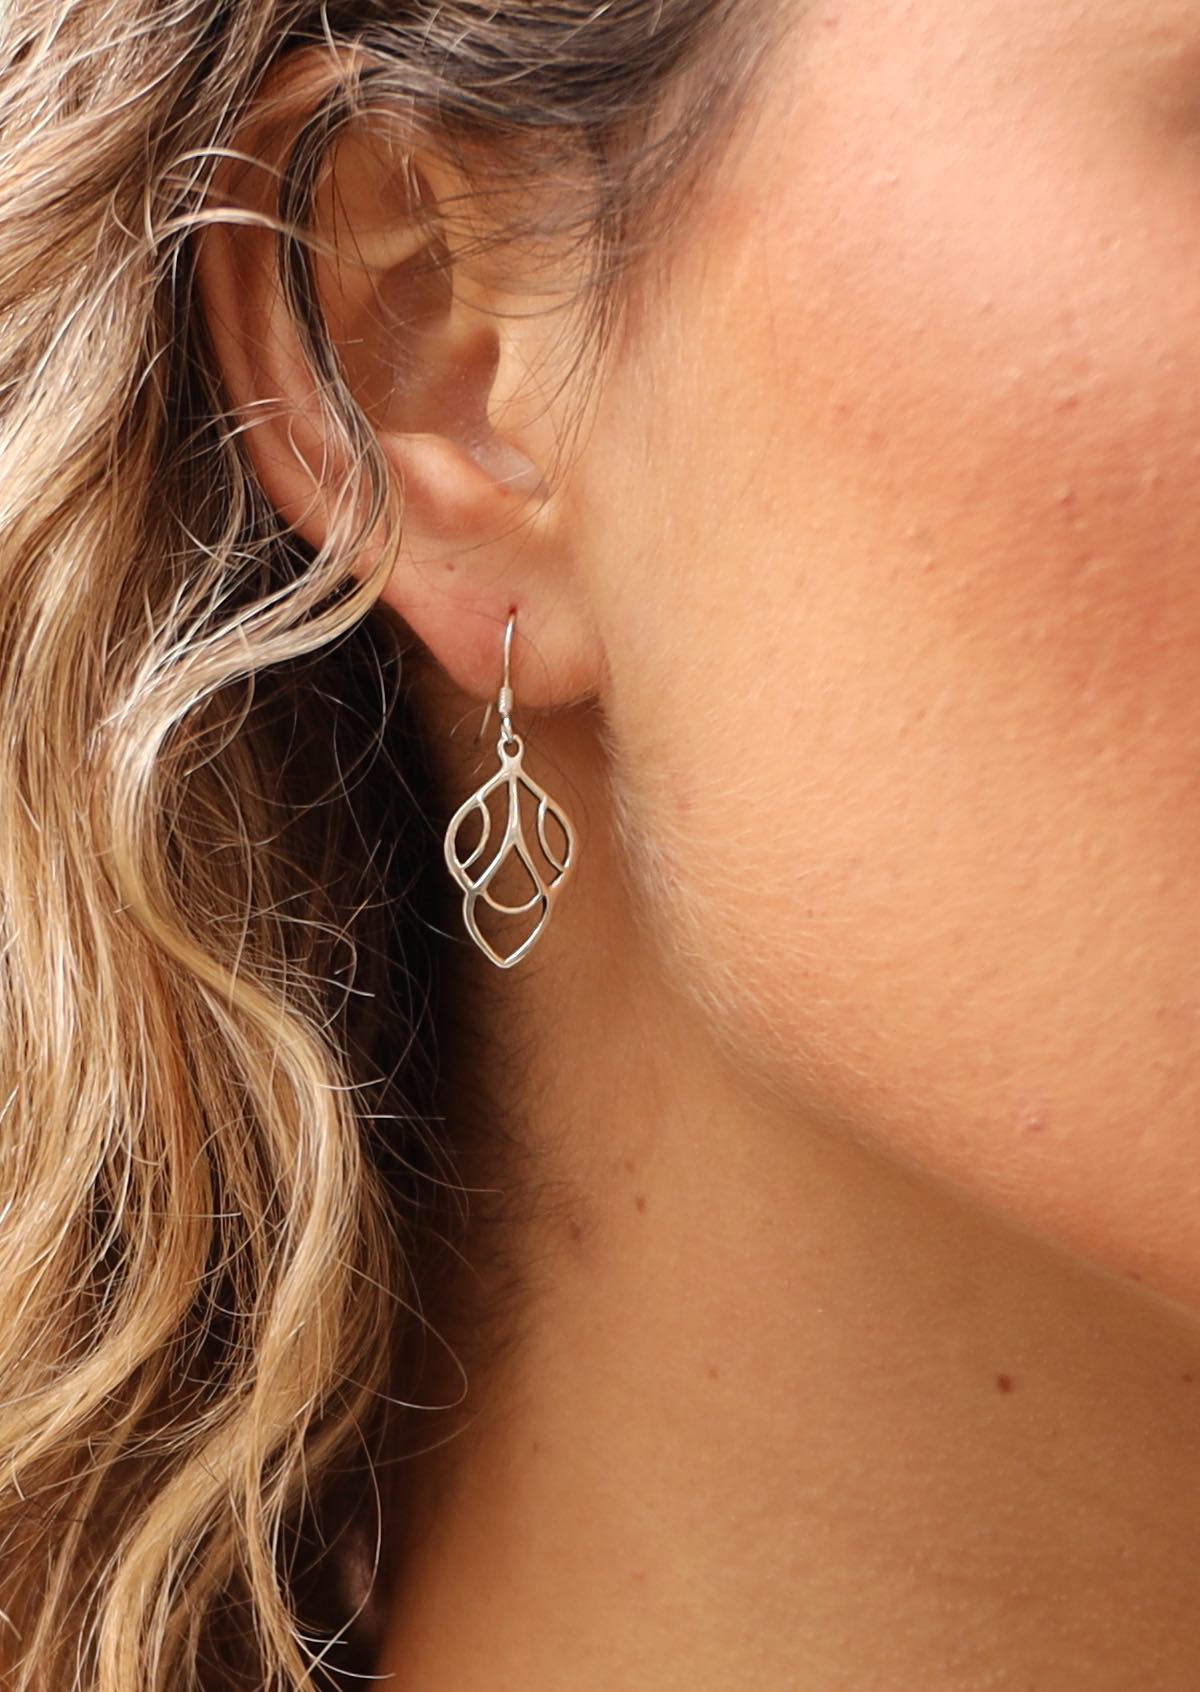 Silver art deco inspire dangly earrings on woman's ear